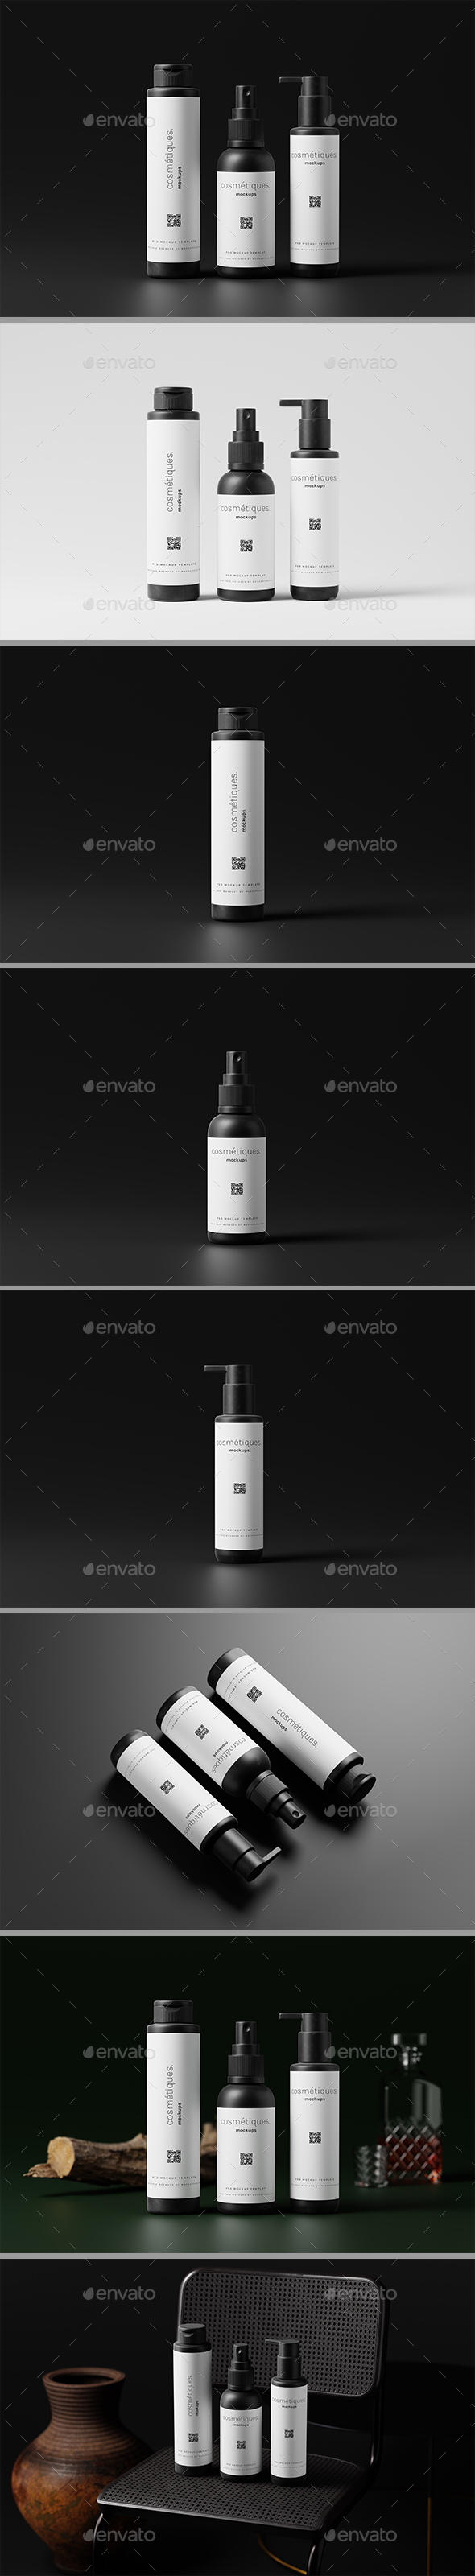 [DOWNLOAD]Minimal Design Cosmetic Bottle Mockup Set